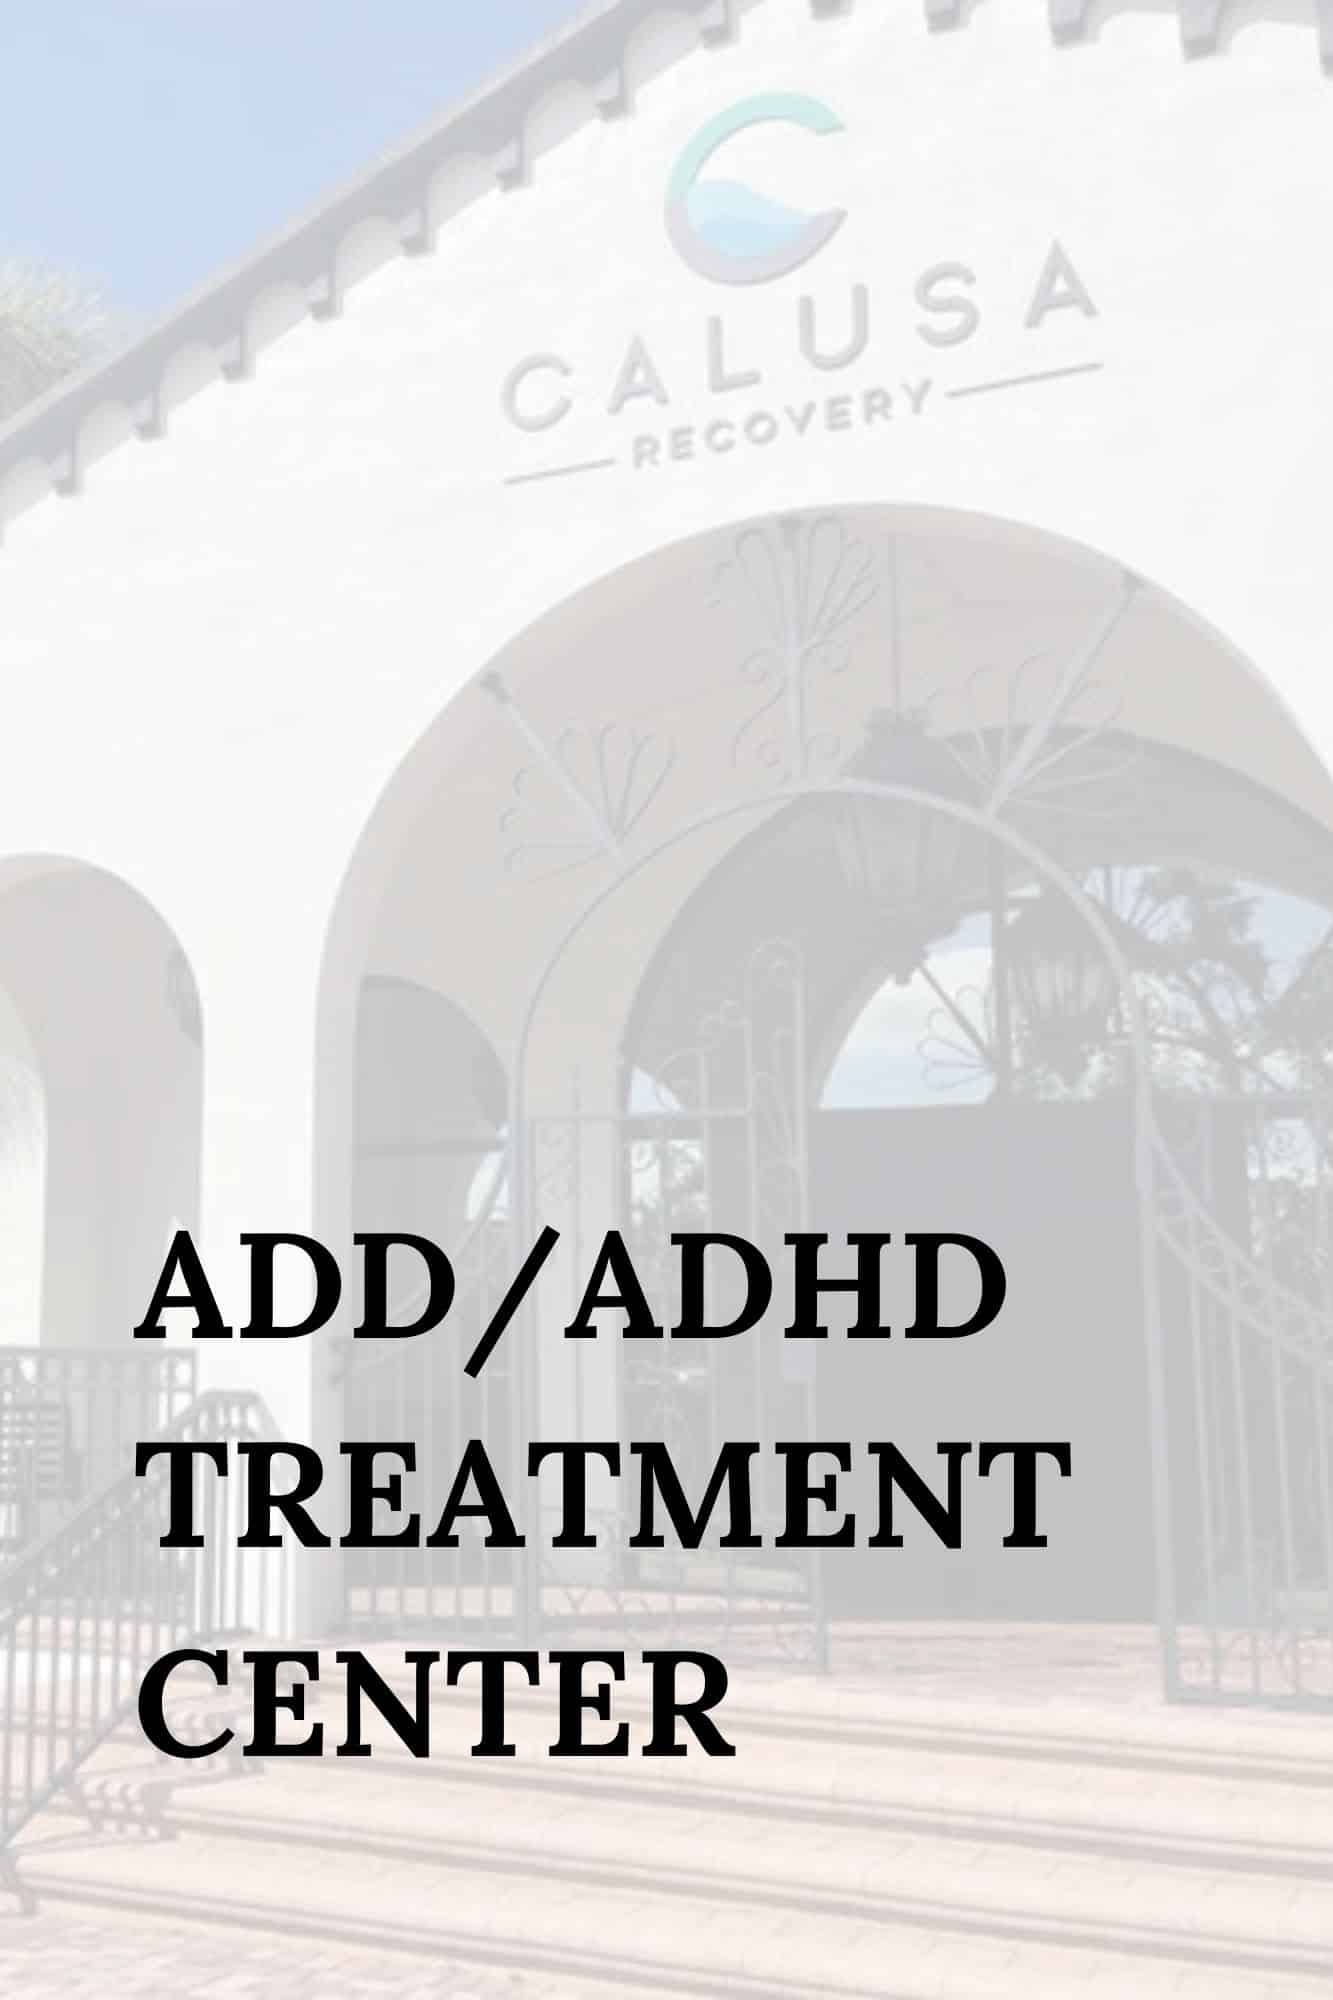 adhd-treatment-center